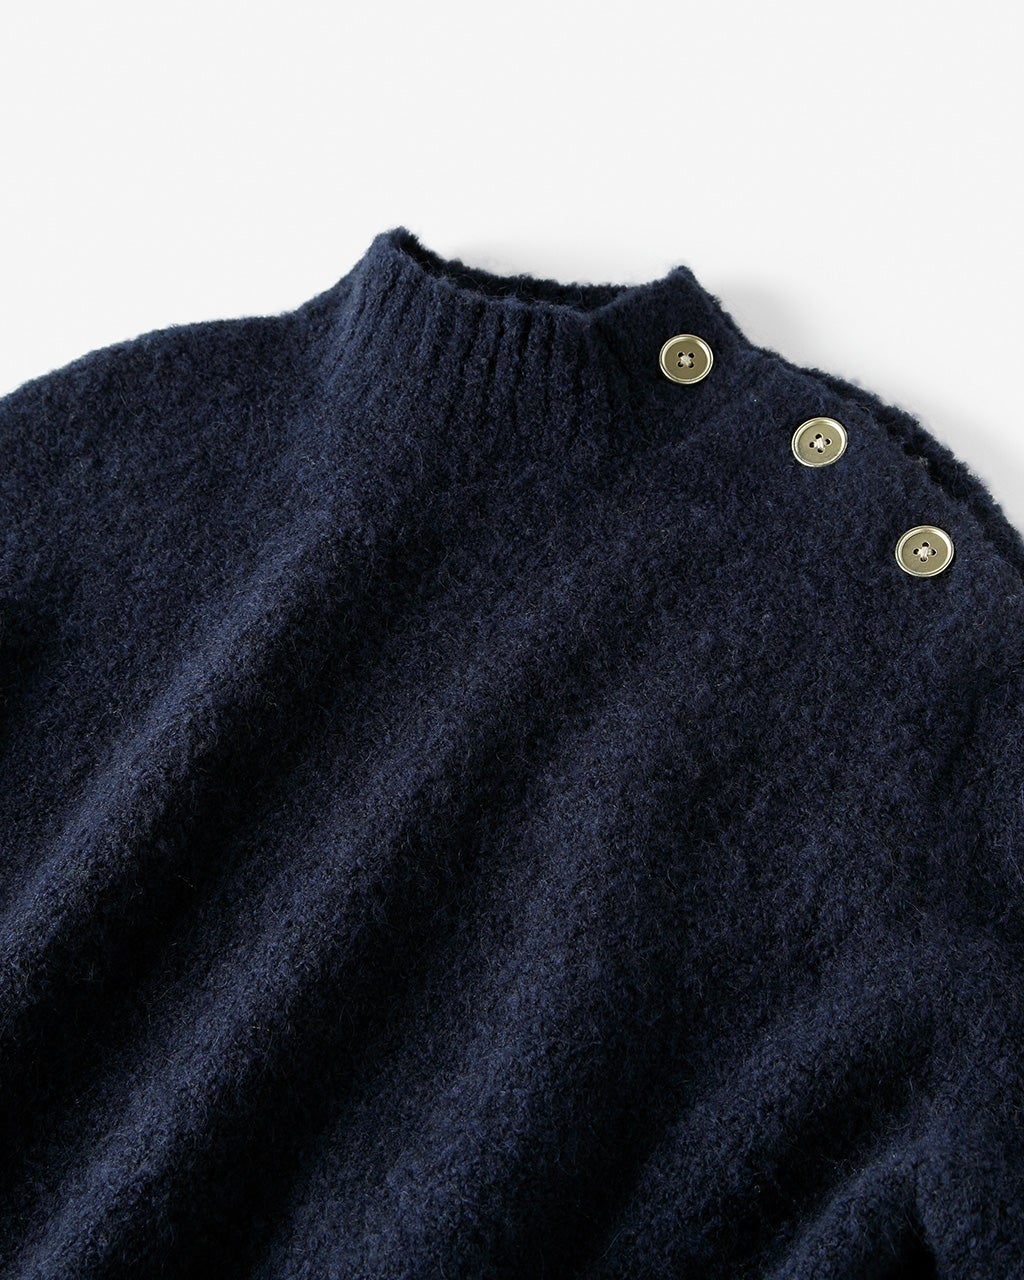 イタリアンアルパカ・ボタンハイネックセーター/40代50代からの 